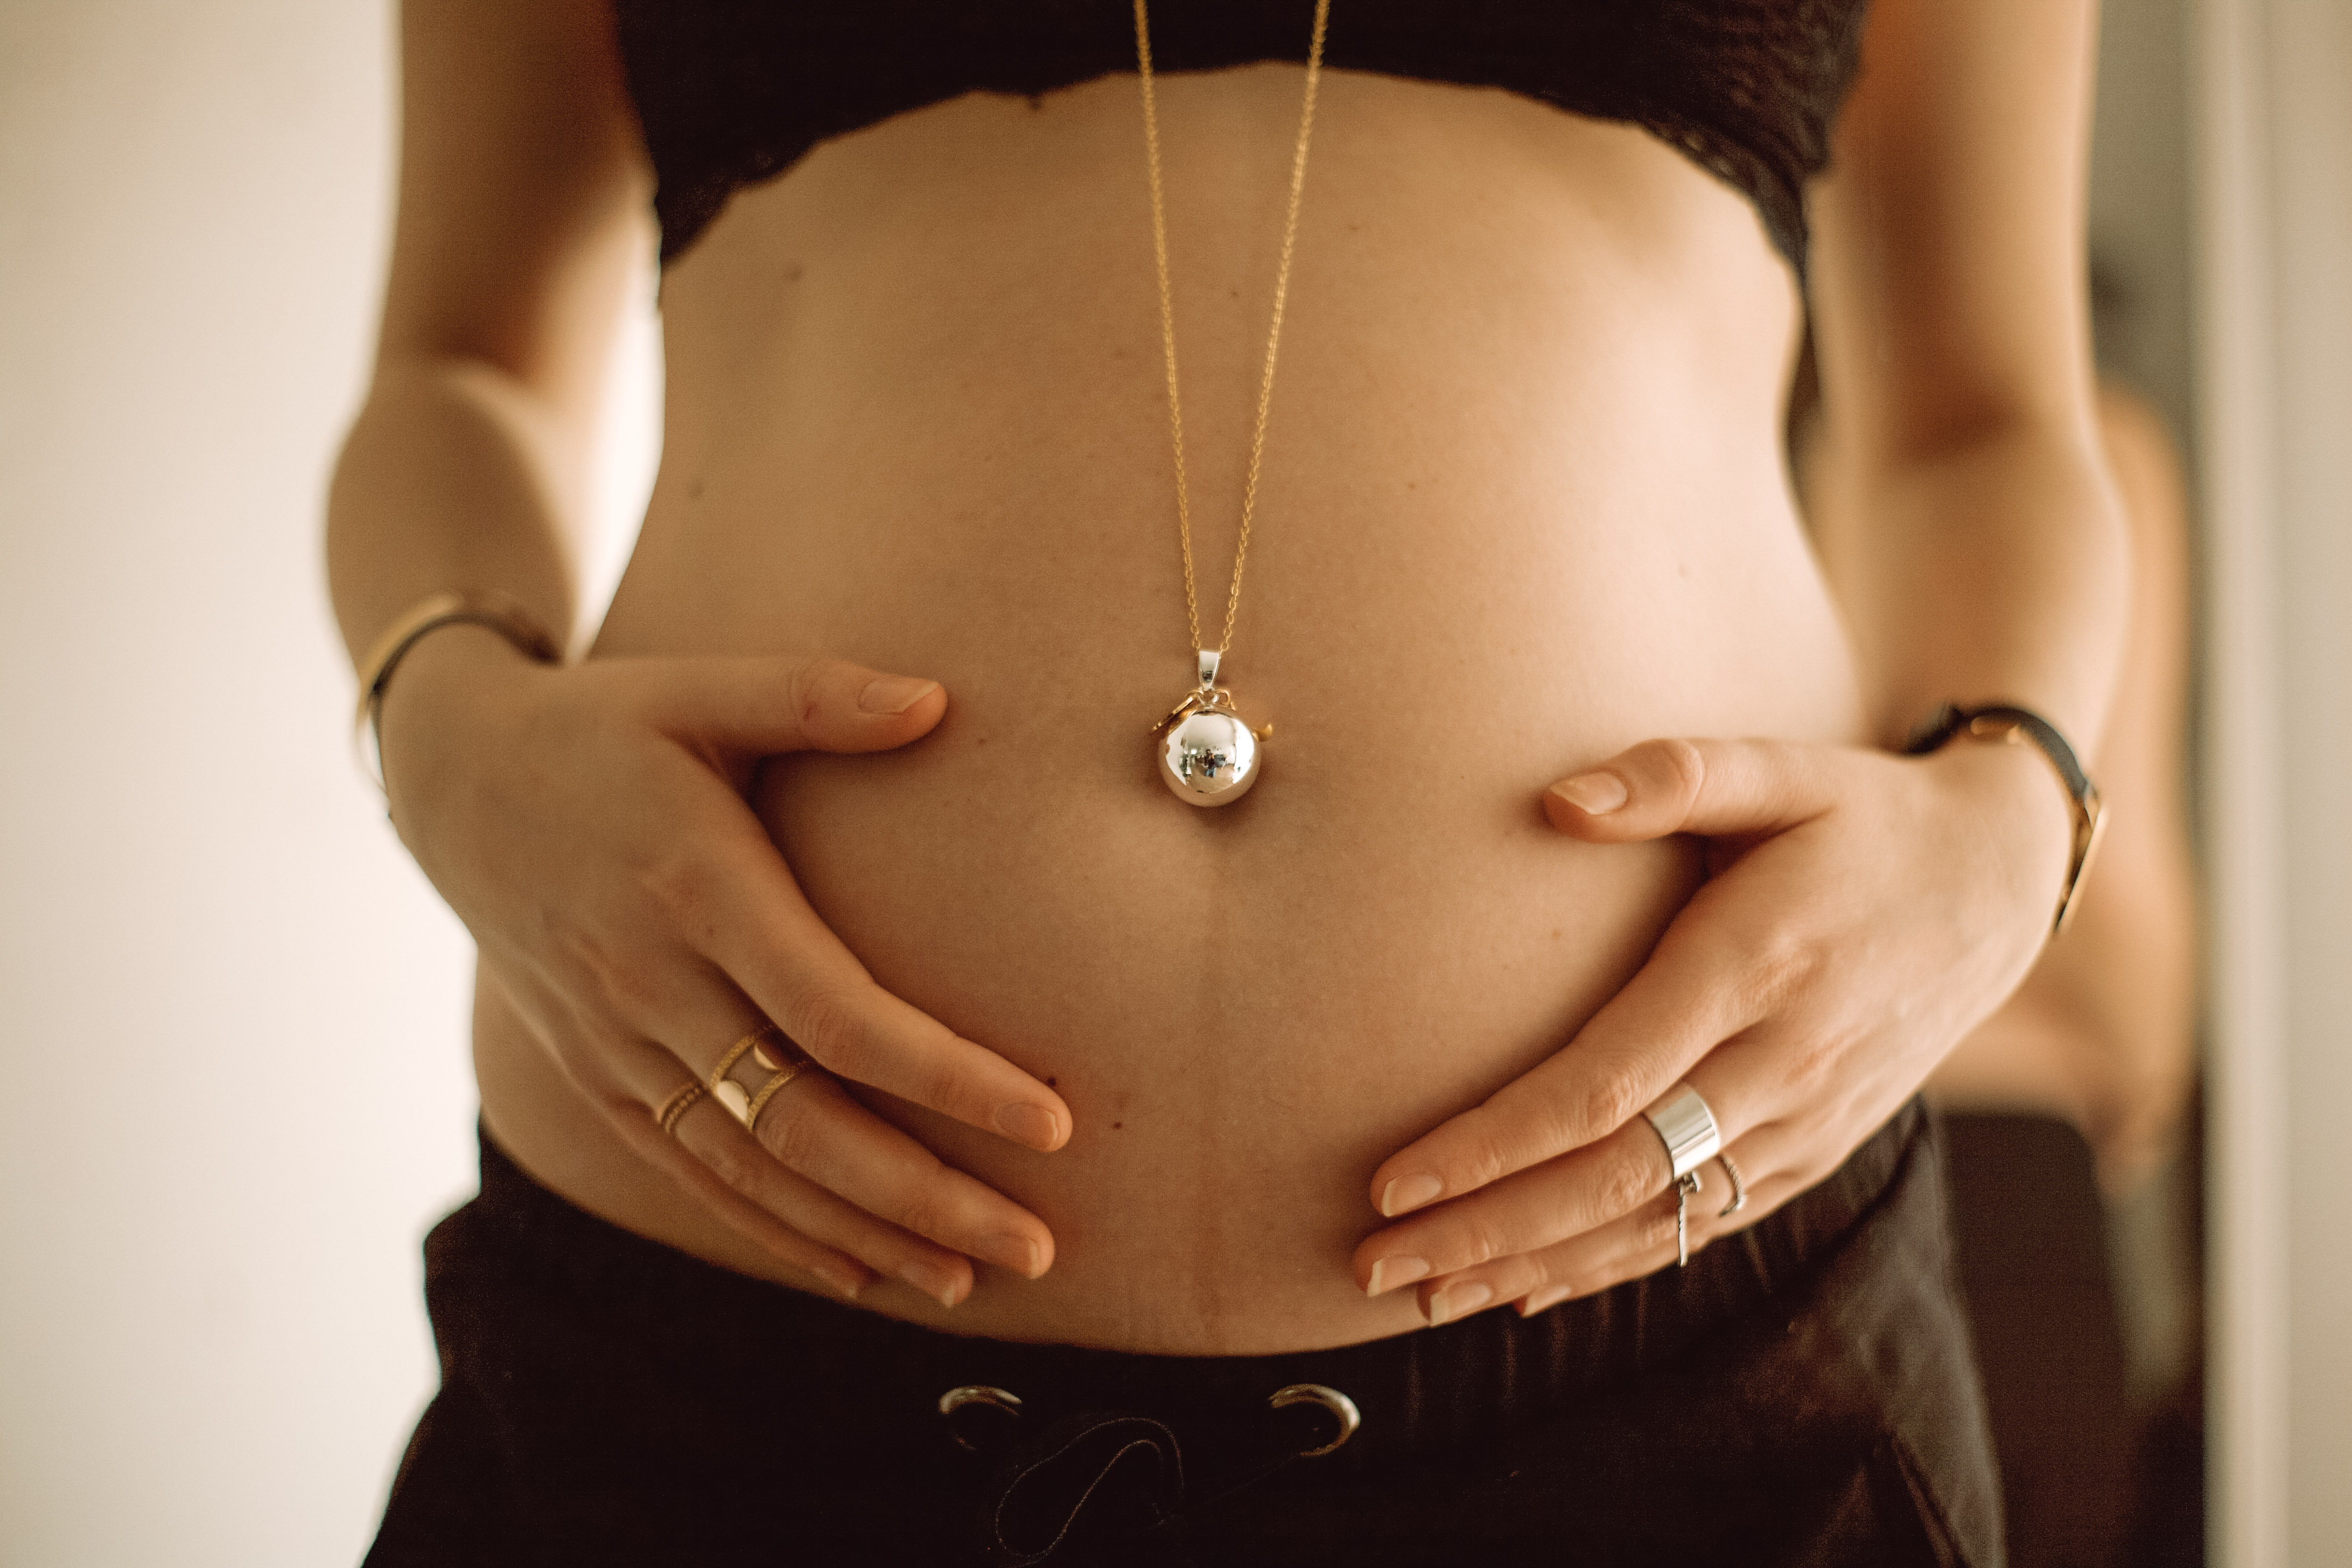 Le bola de grossesse : ce bijou dont les futures mamans raffolent - Tiniloo